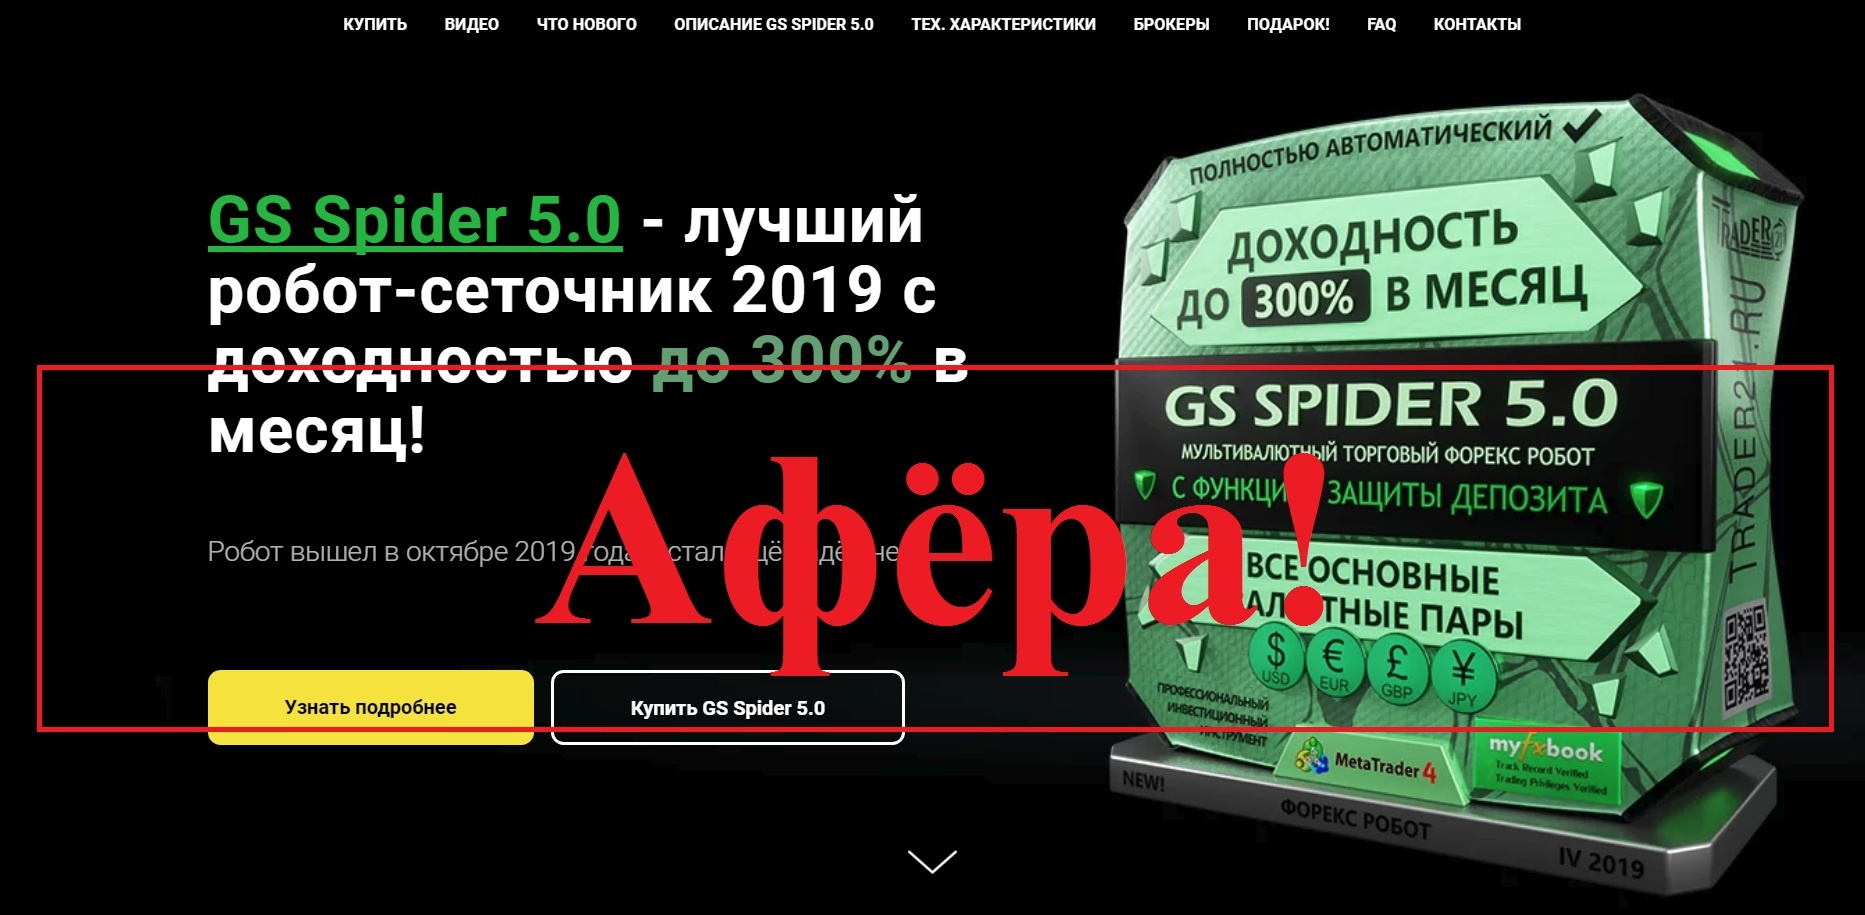 Трейдер Андрей Алмазов и робот GS Spider 5.0 - реальные отзывы